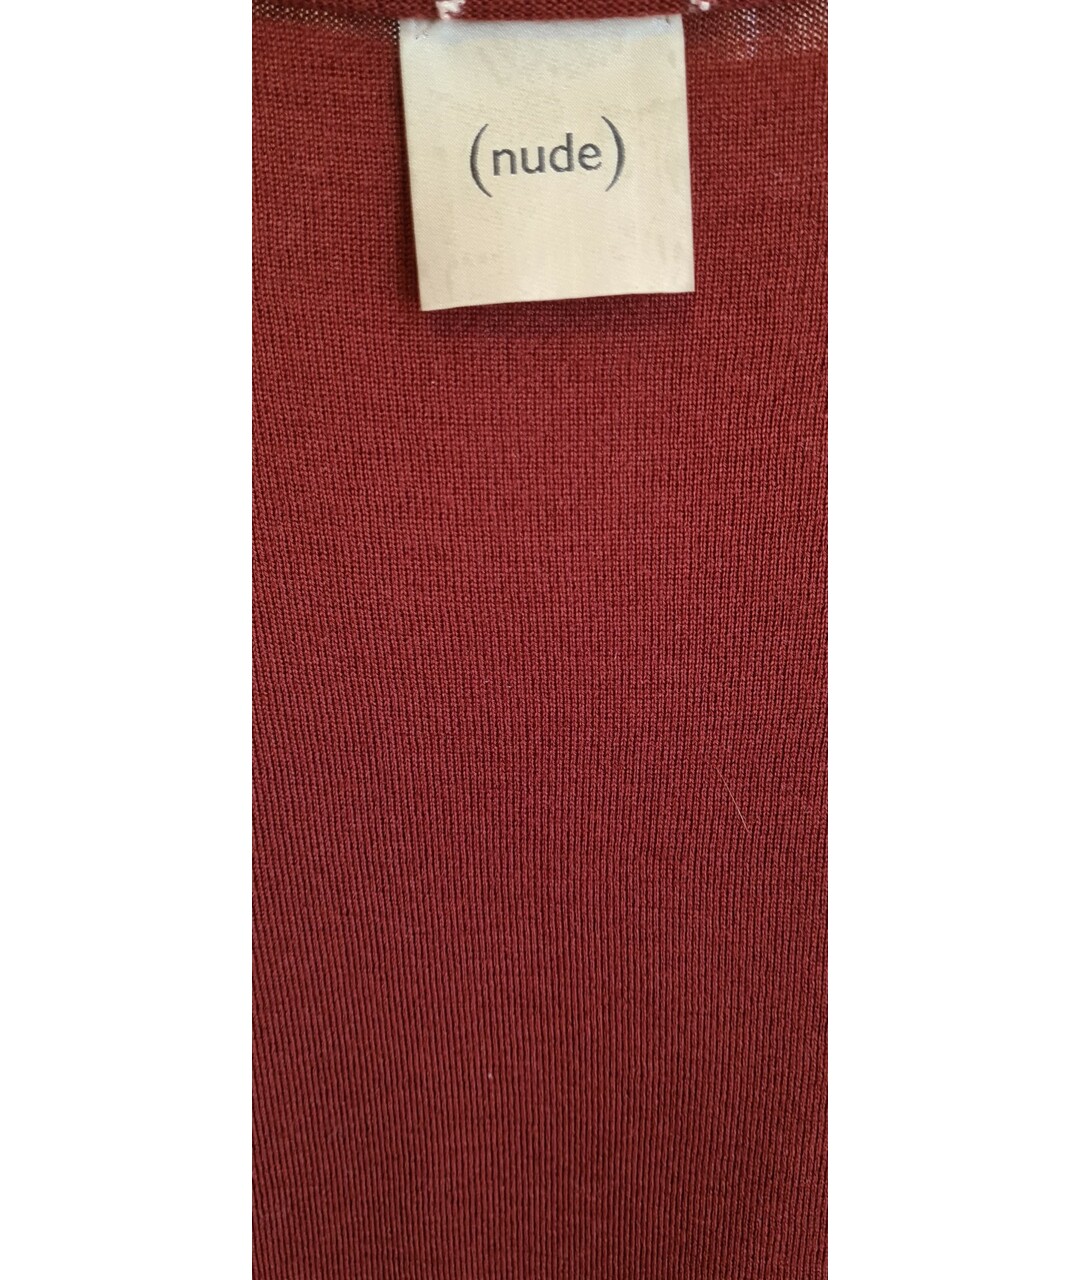 NUDE Бордовый шерстяной джемпер / свитер, фото 5